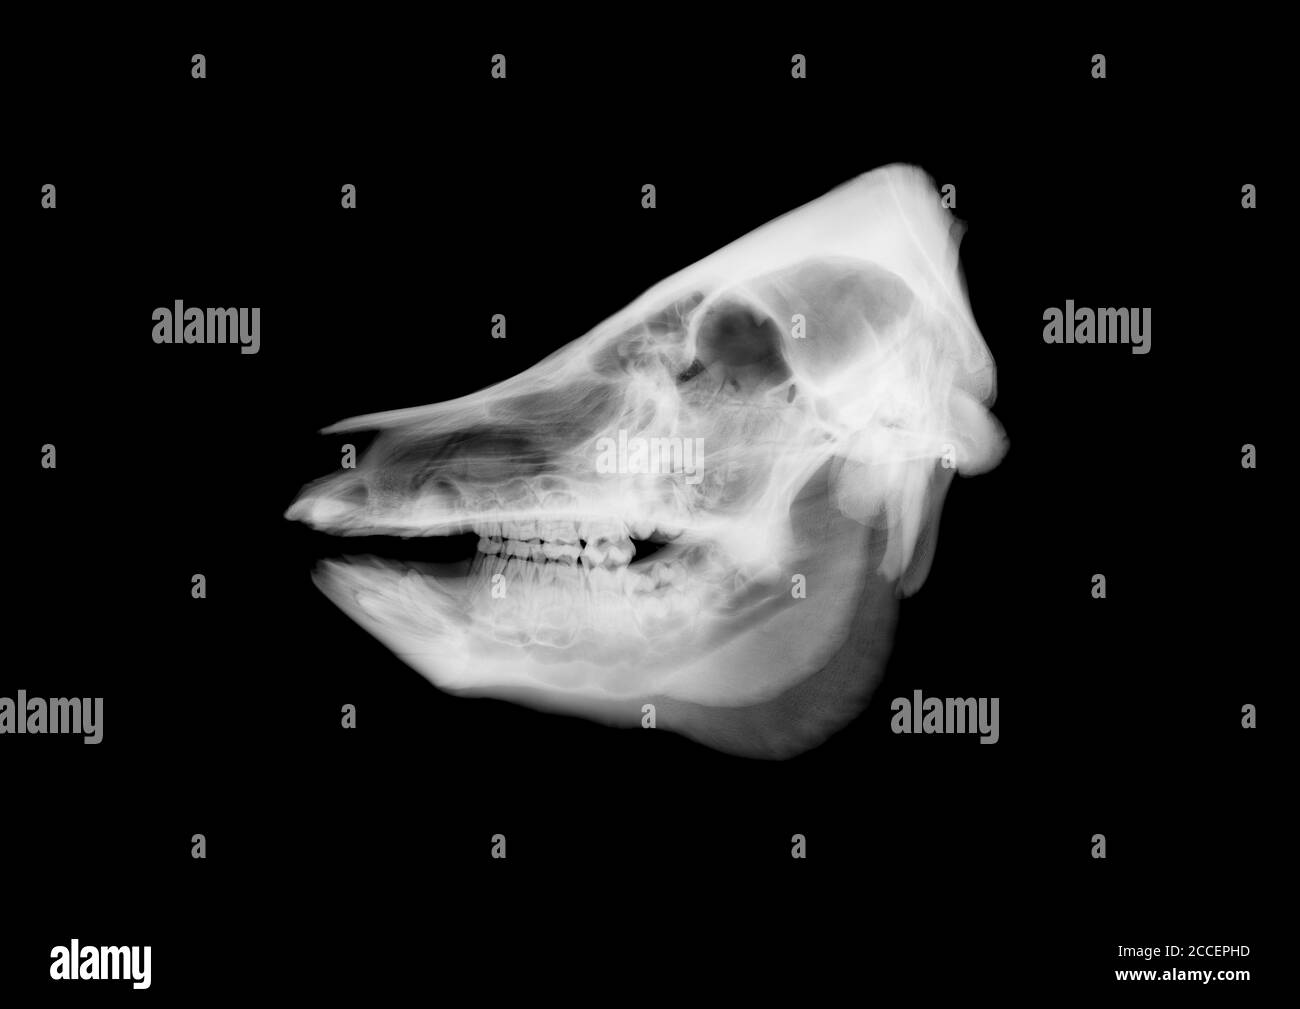 Pig skull, X-ray Stock Photo